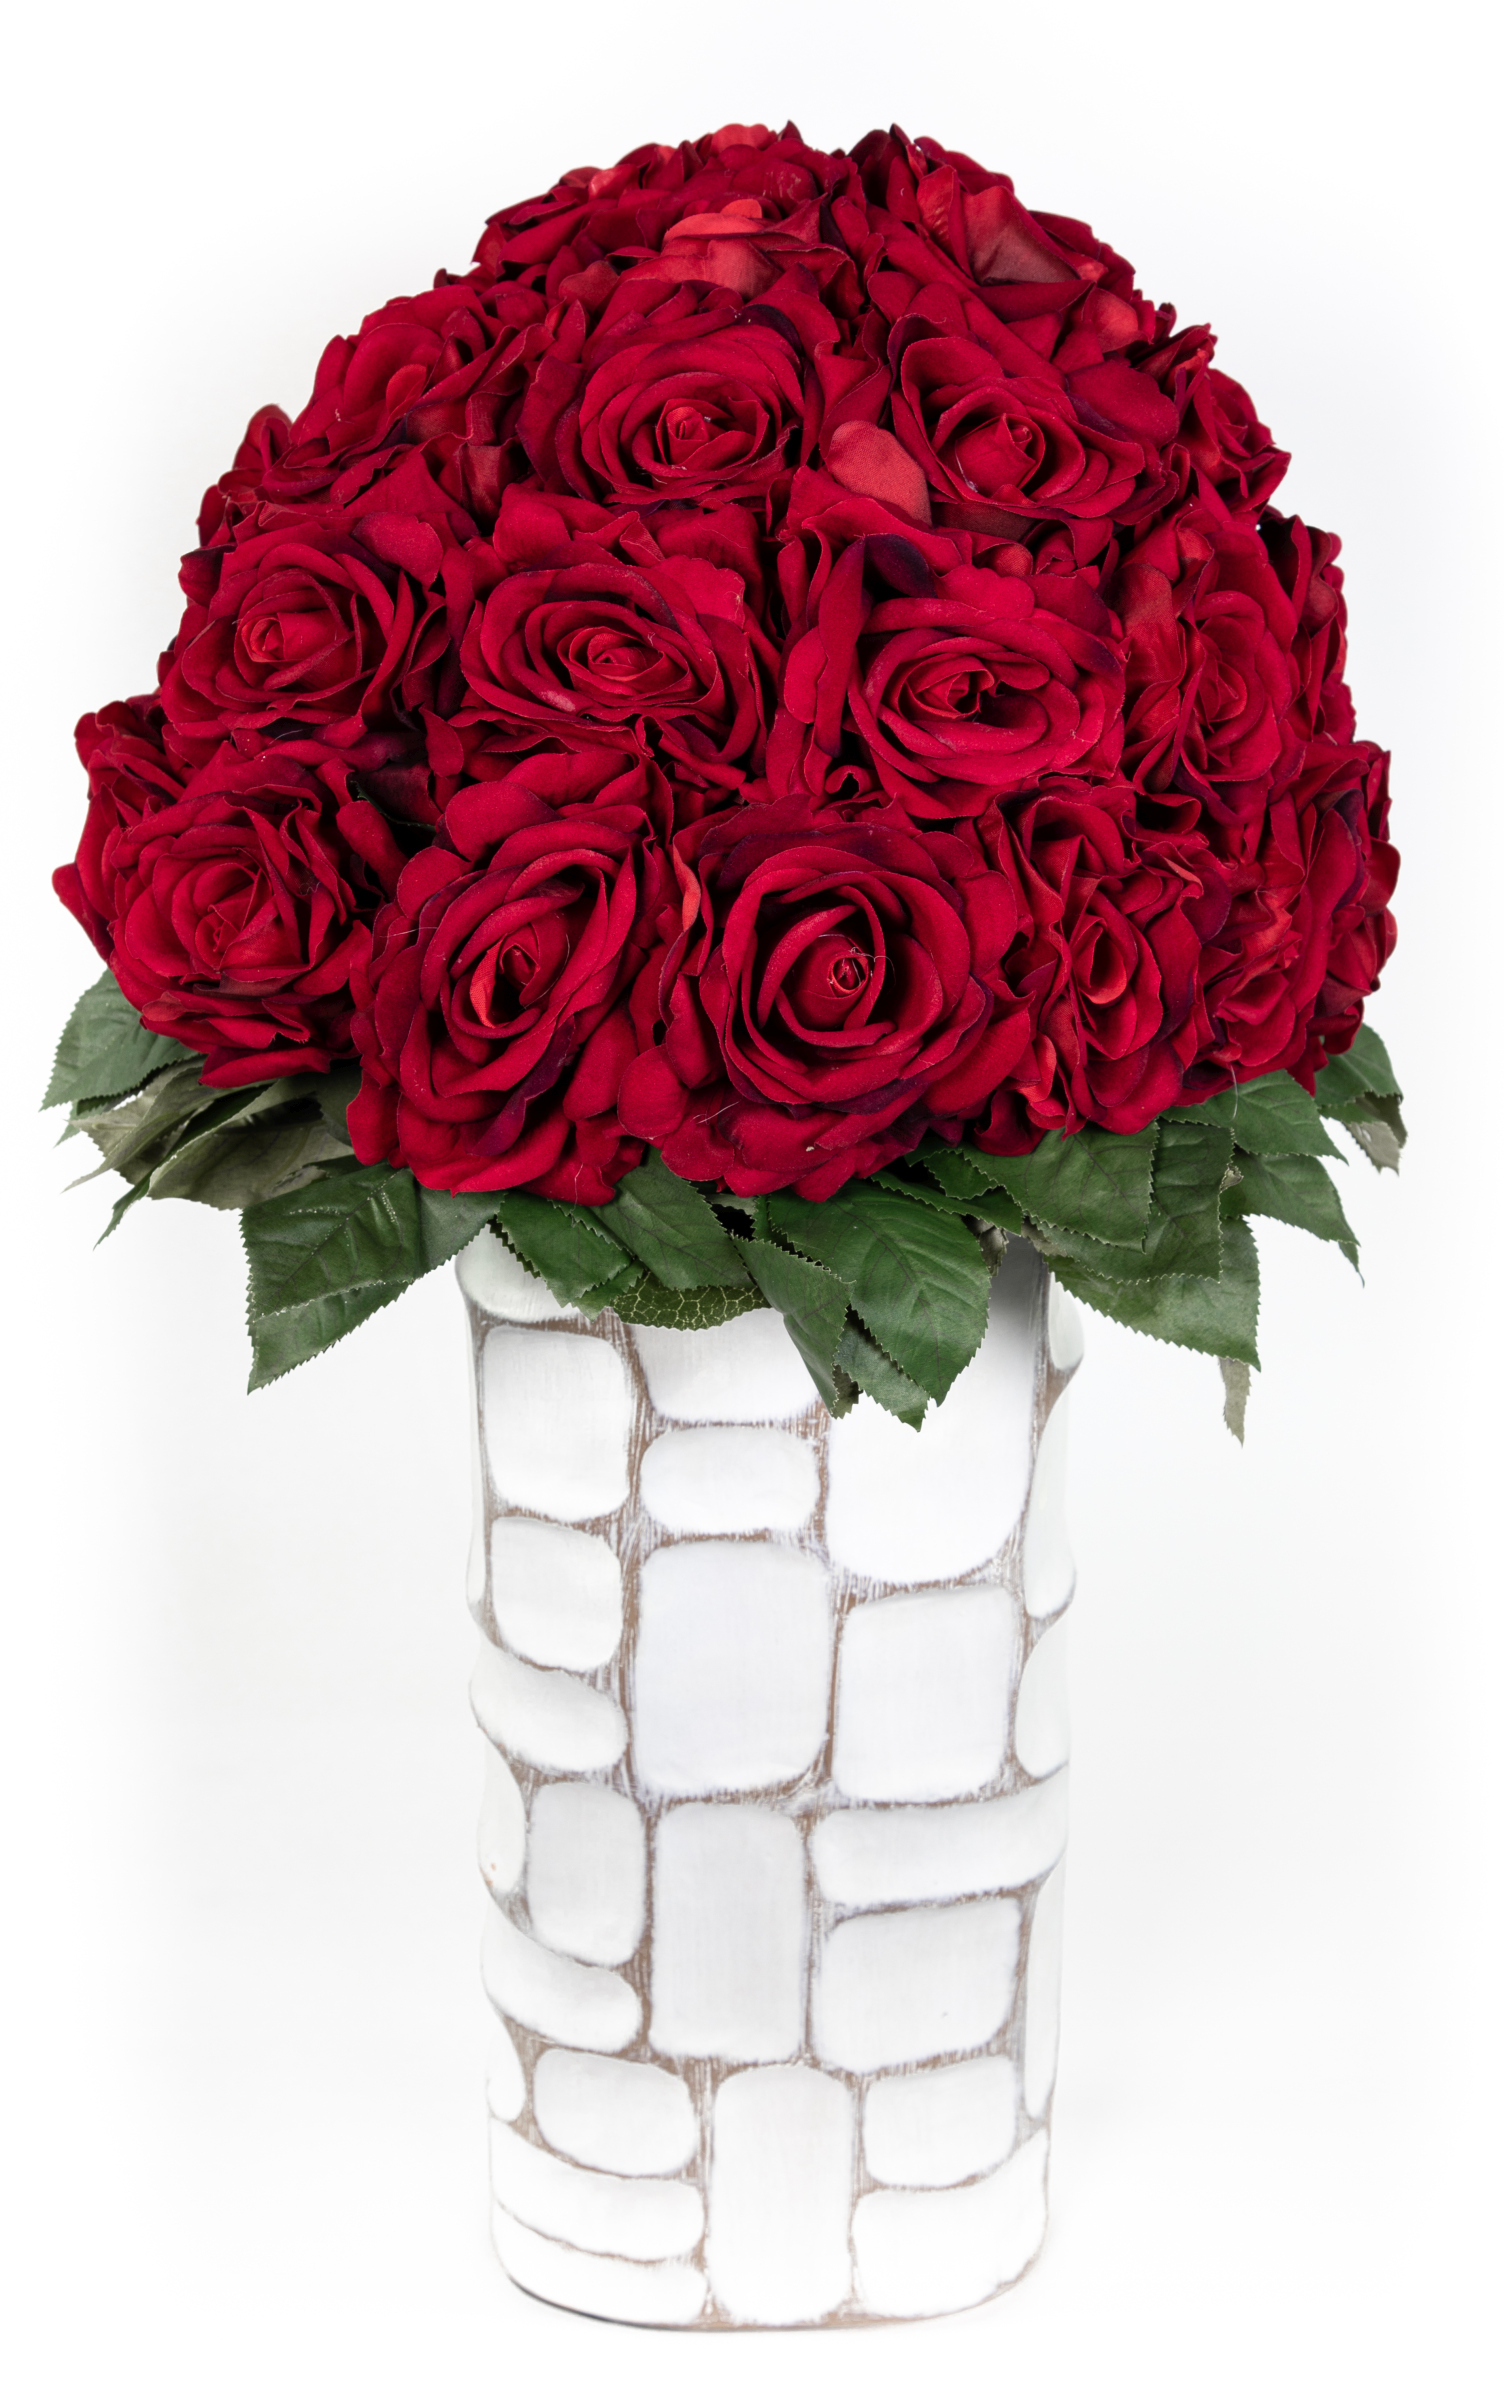 Baccararosenstrauß Exklusiv 56x46cm mit 38 Baccararosen JA Kunstblumen künstliche Blumen Strauß